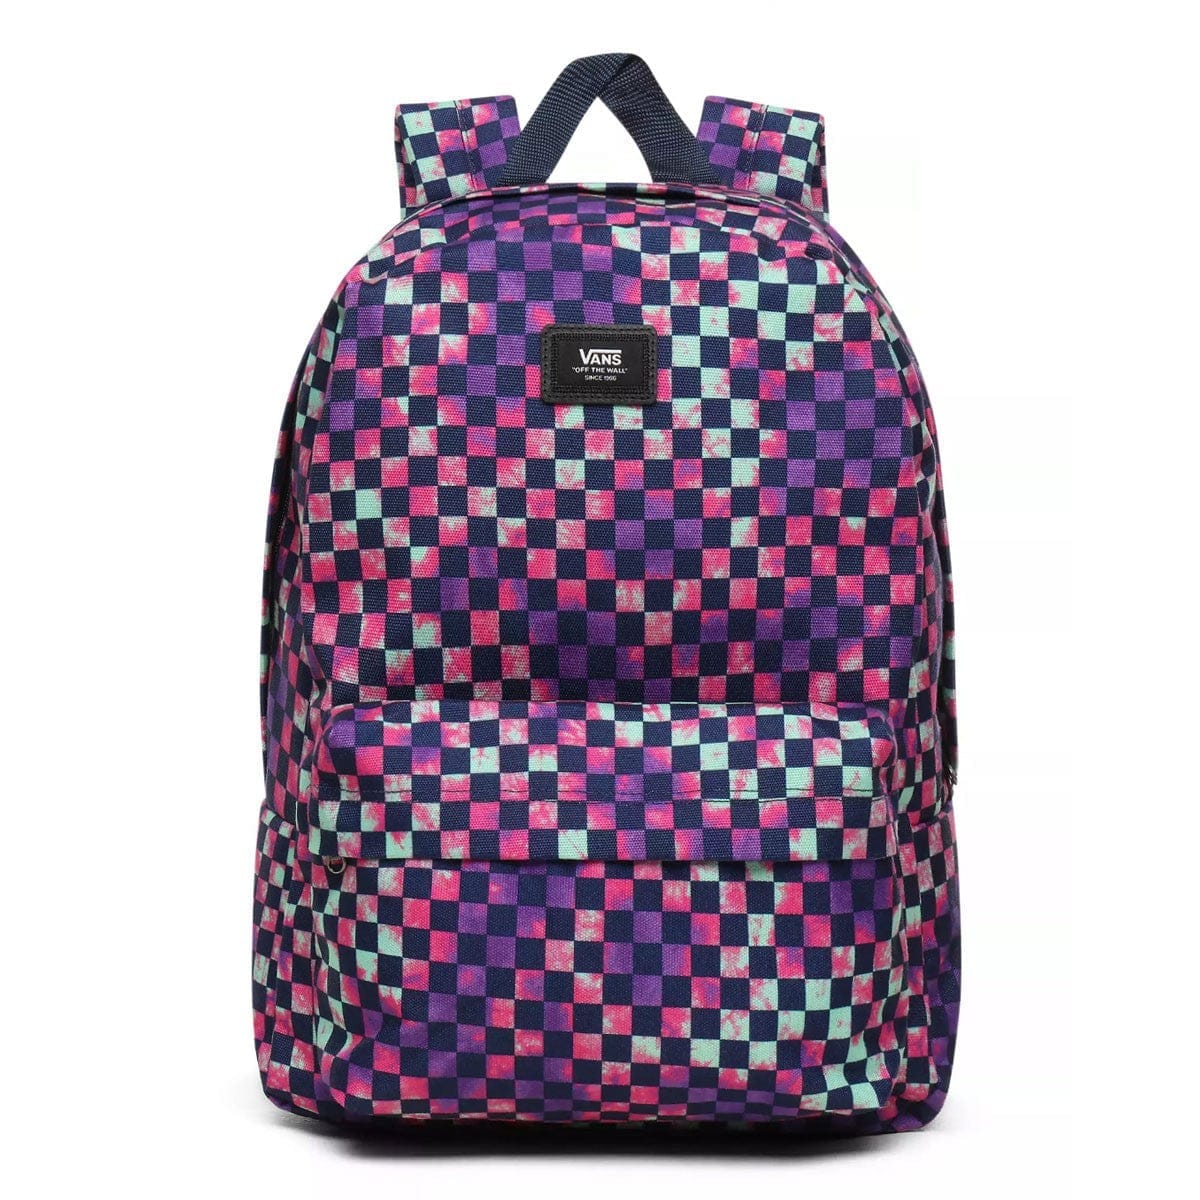 Vans Tie Dye Checkers Backpack